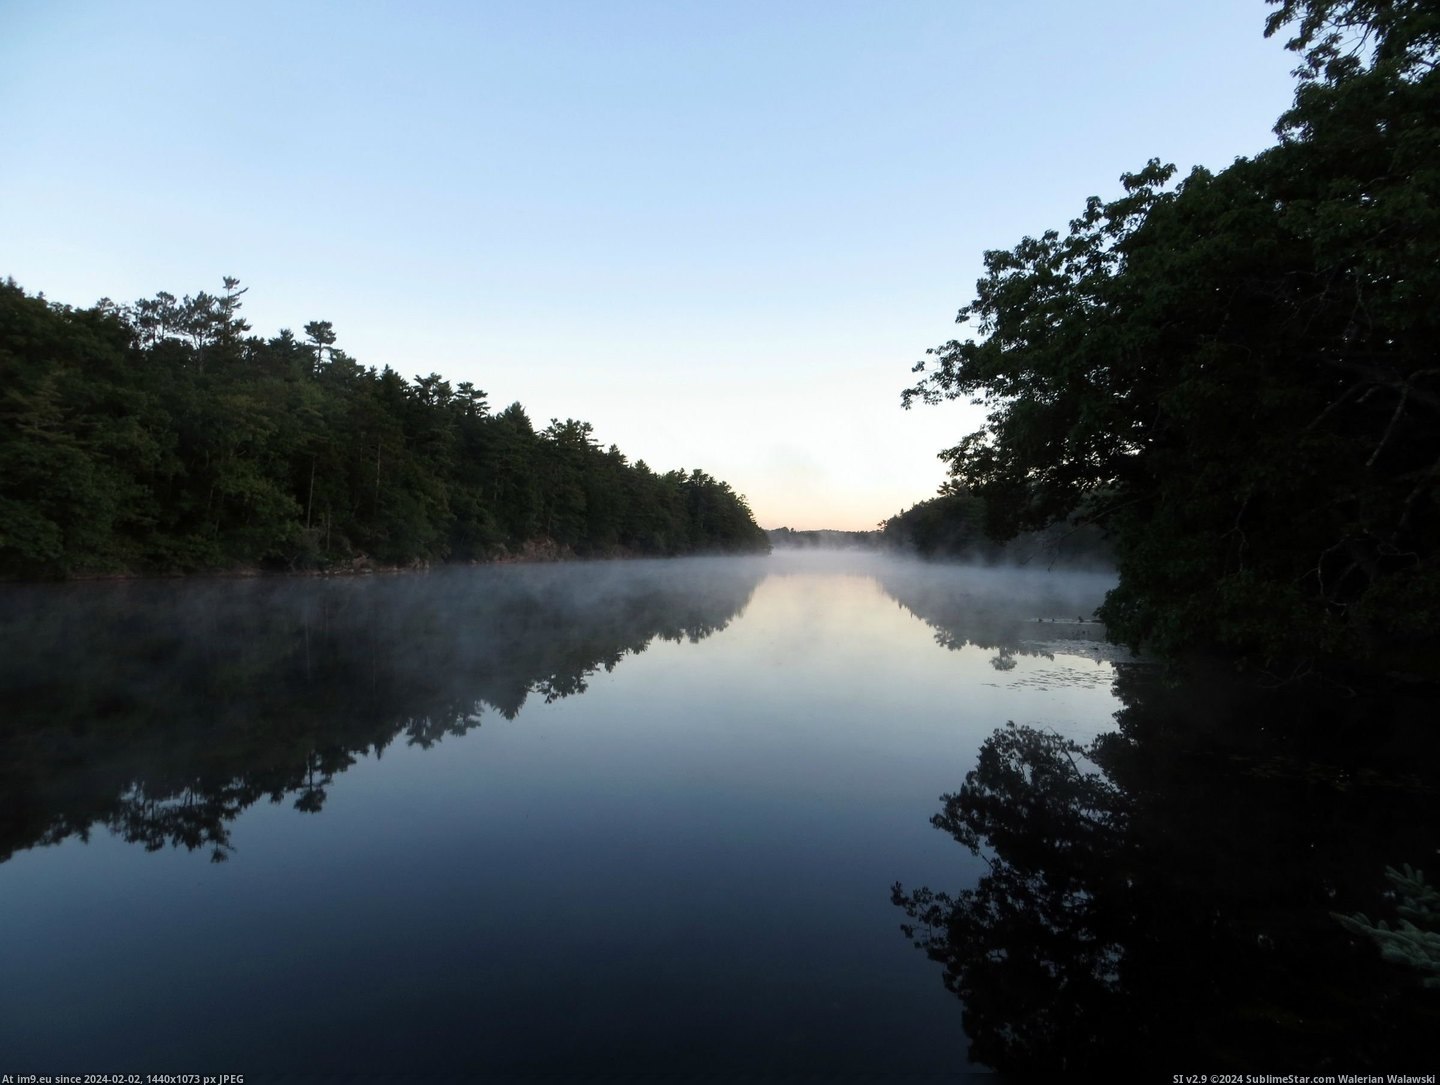 #Lake #Dawn #4000x3000 #Maine [Earthporn] Maine lake at dawn [OC][4000x3000] Pic. (Bild von album My r/EARTHPORN favs))